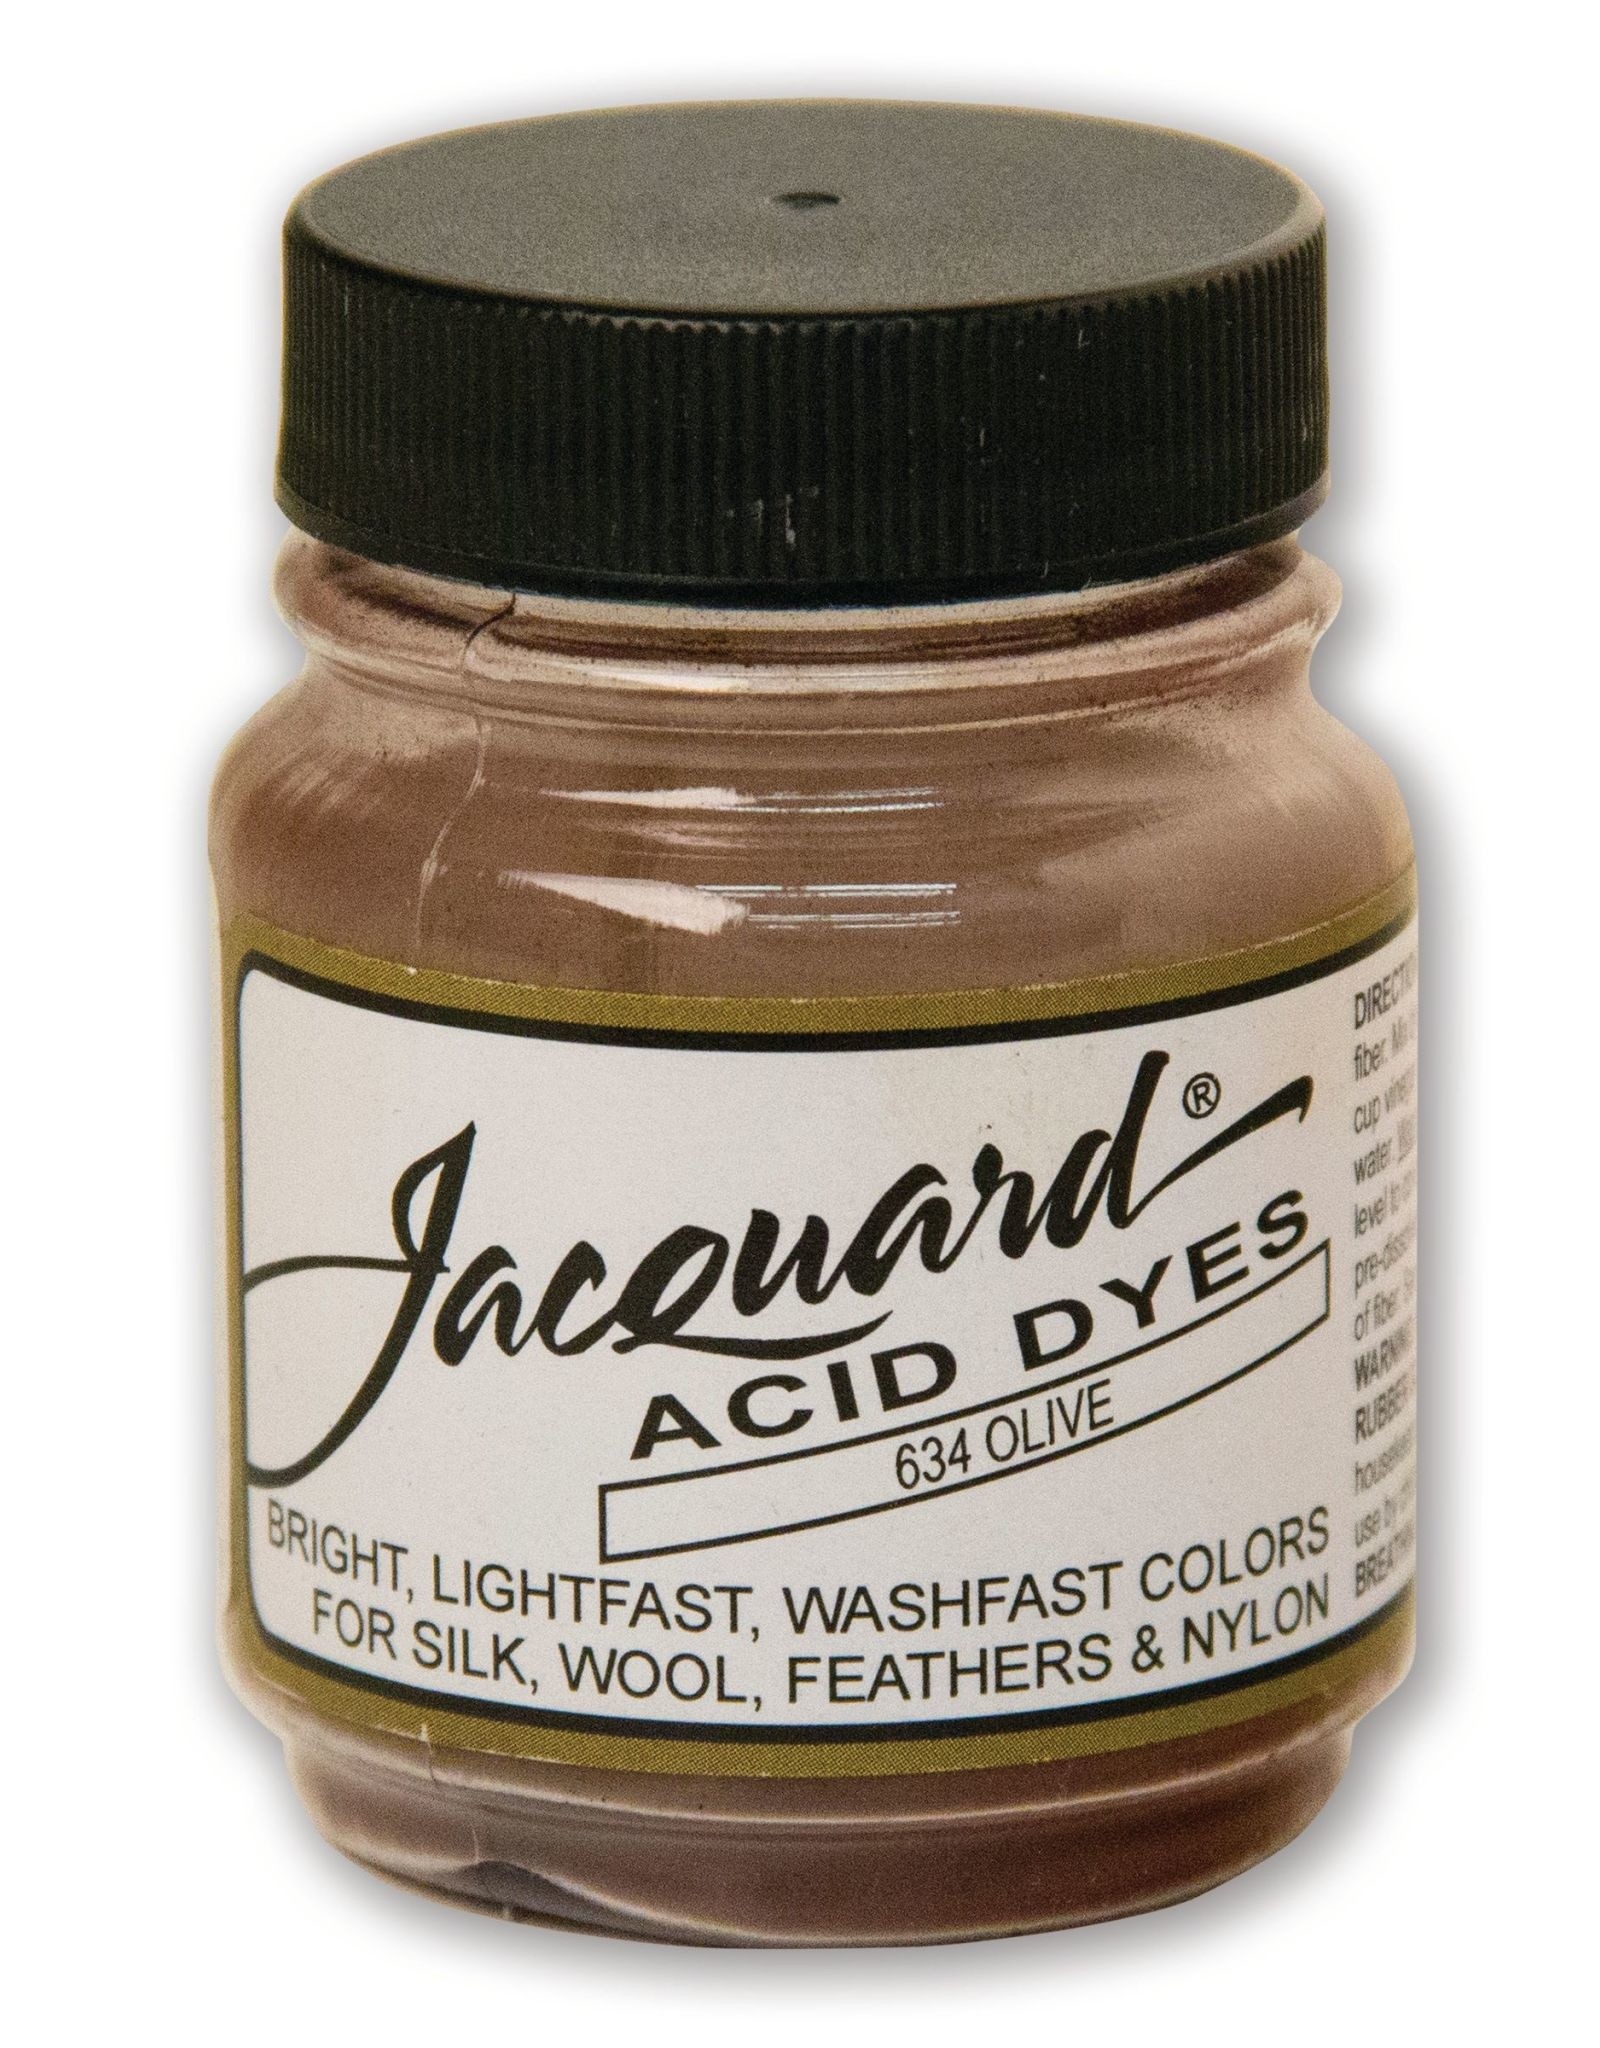 Jacquard Jacquard Acid Dye, #634 Olive ½oz